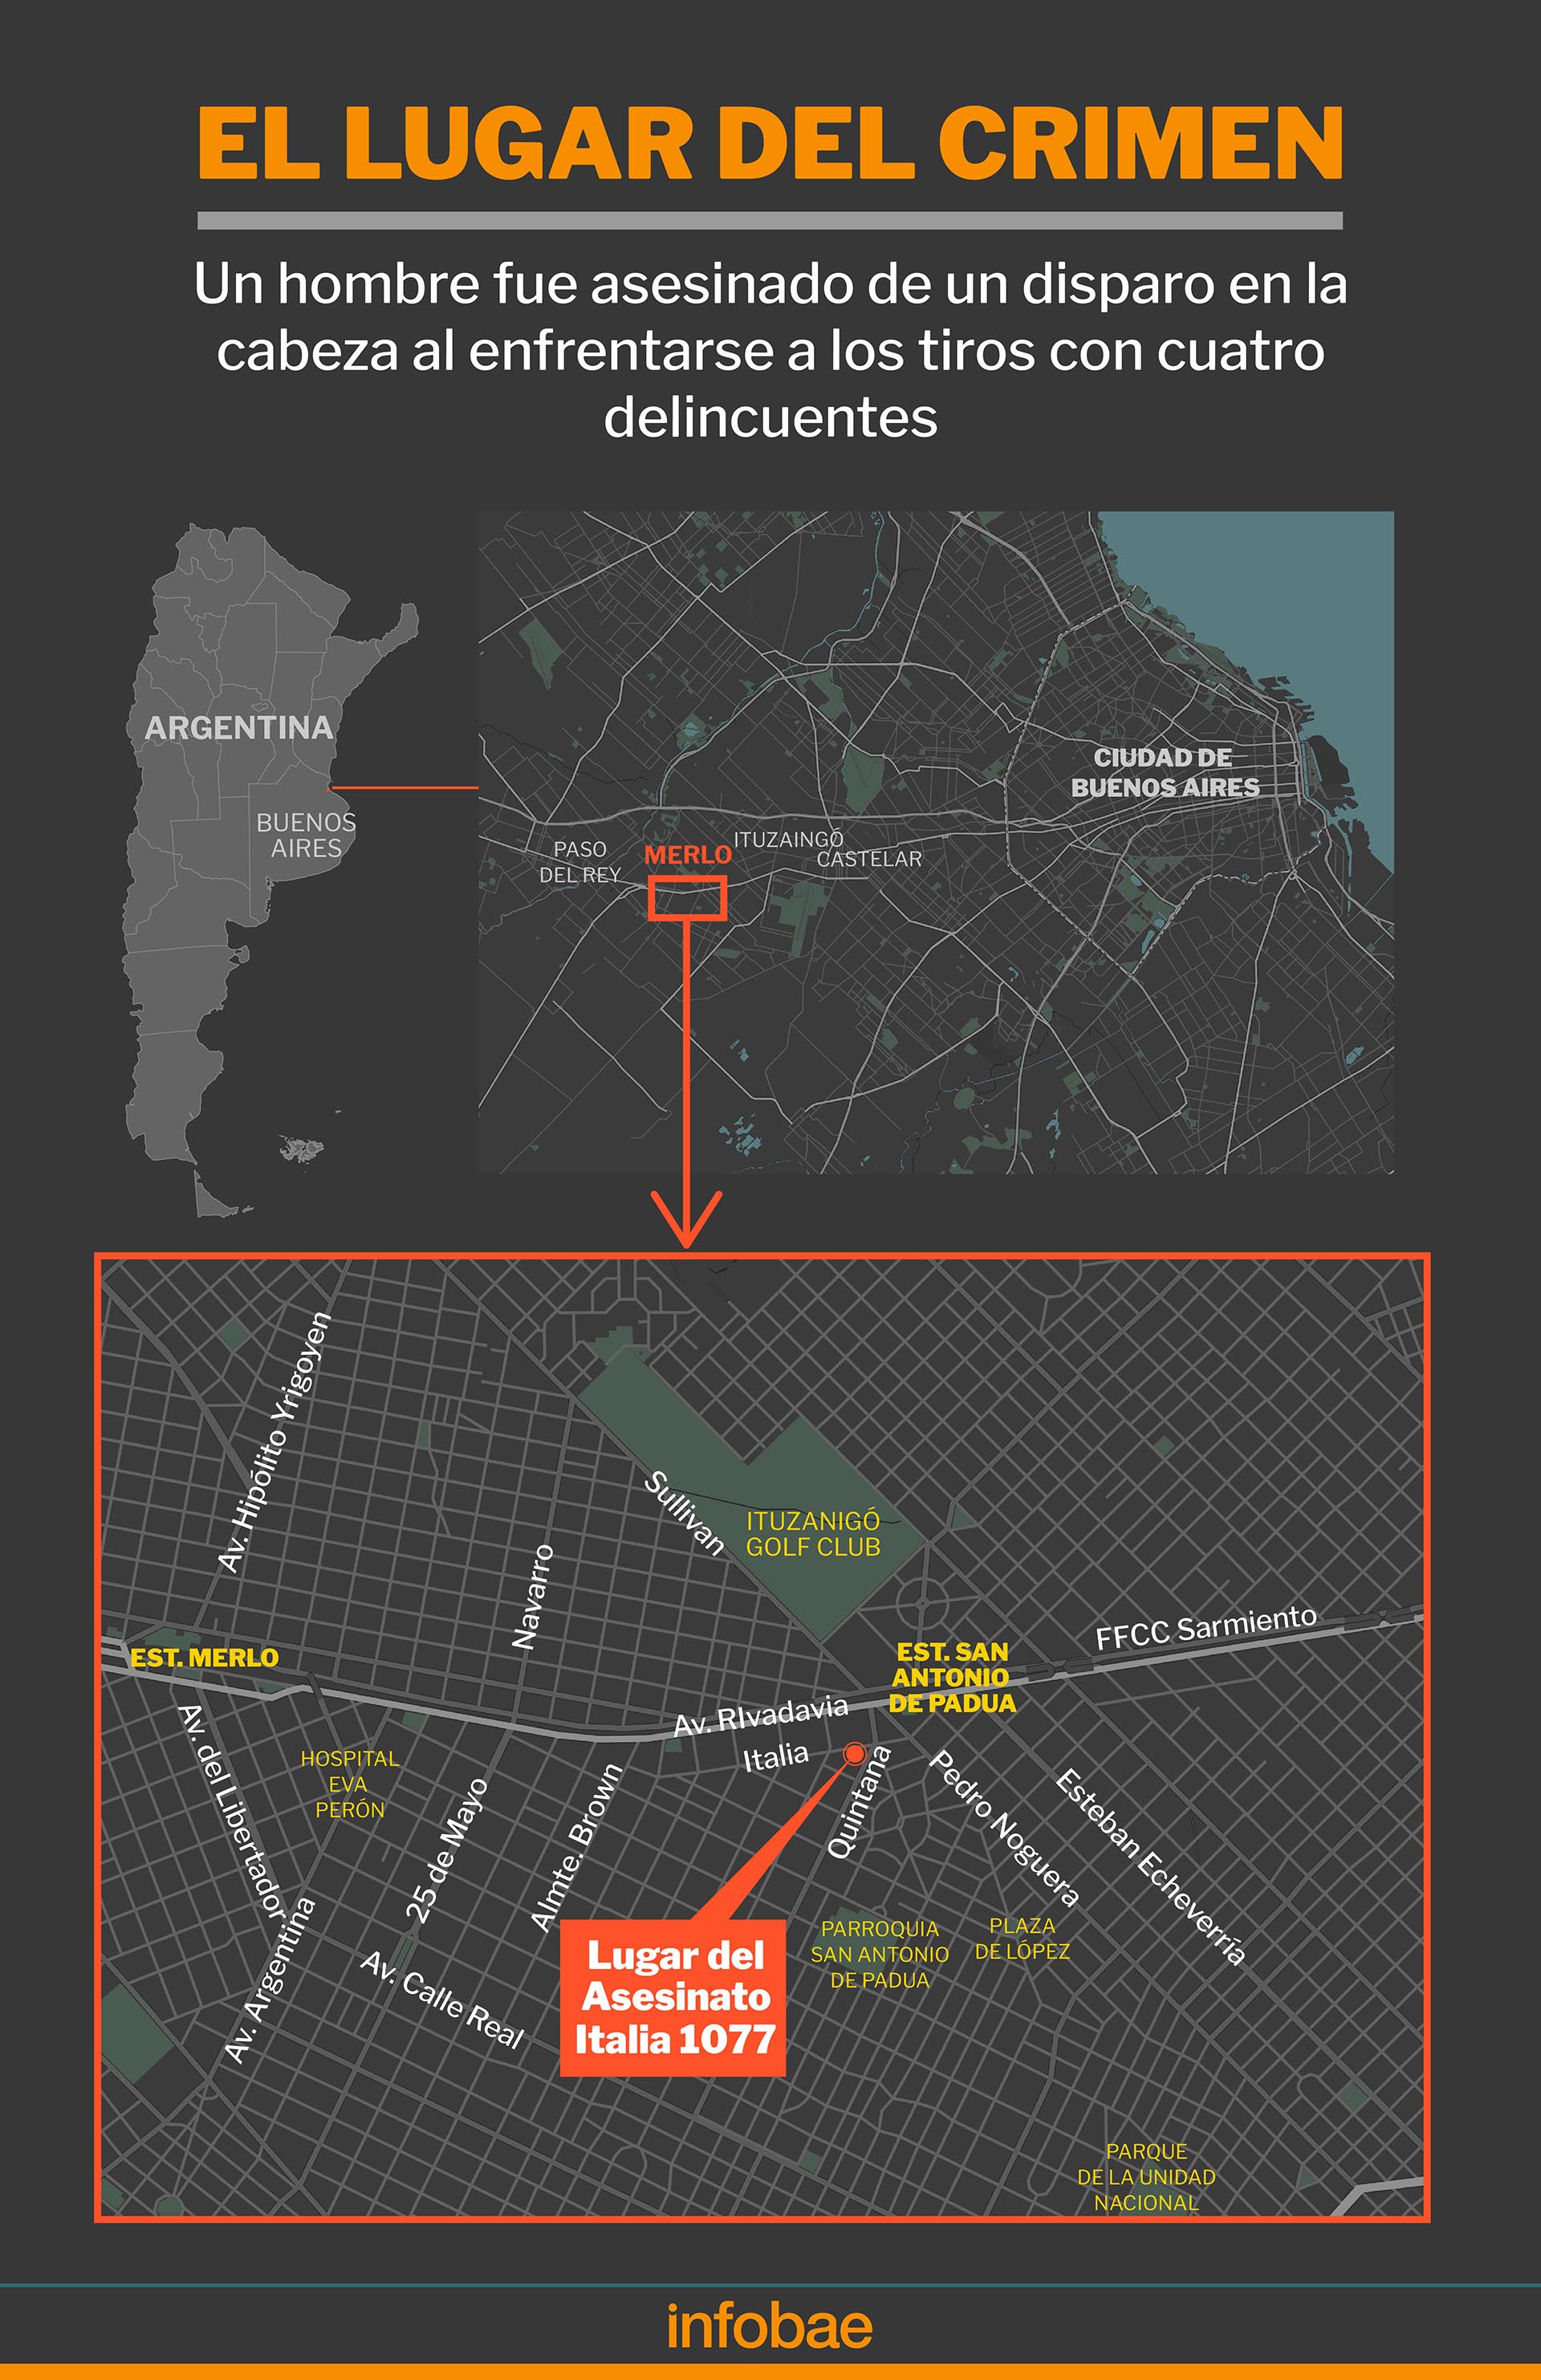 El lugar del crimen en San Antonio de Padua (Infografía: Marcelo Regalado)